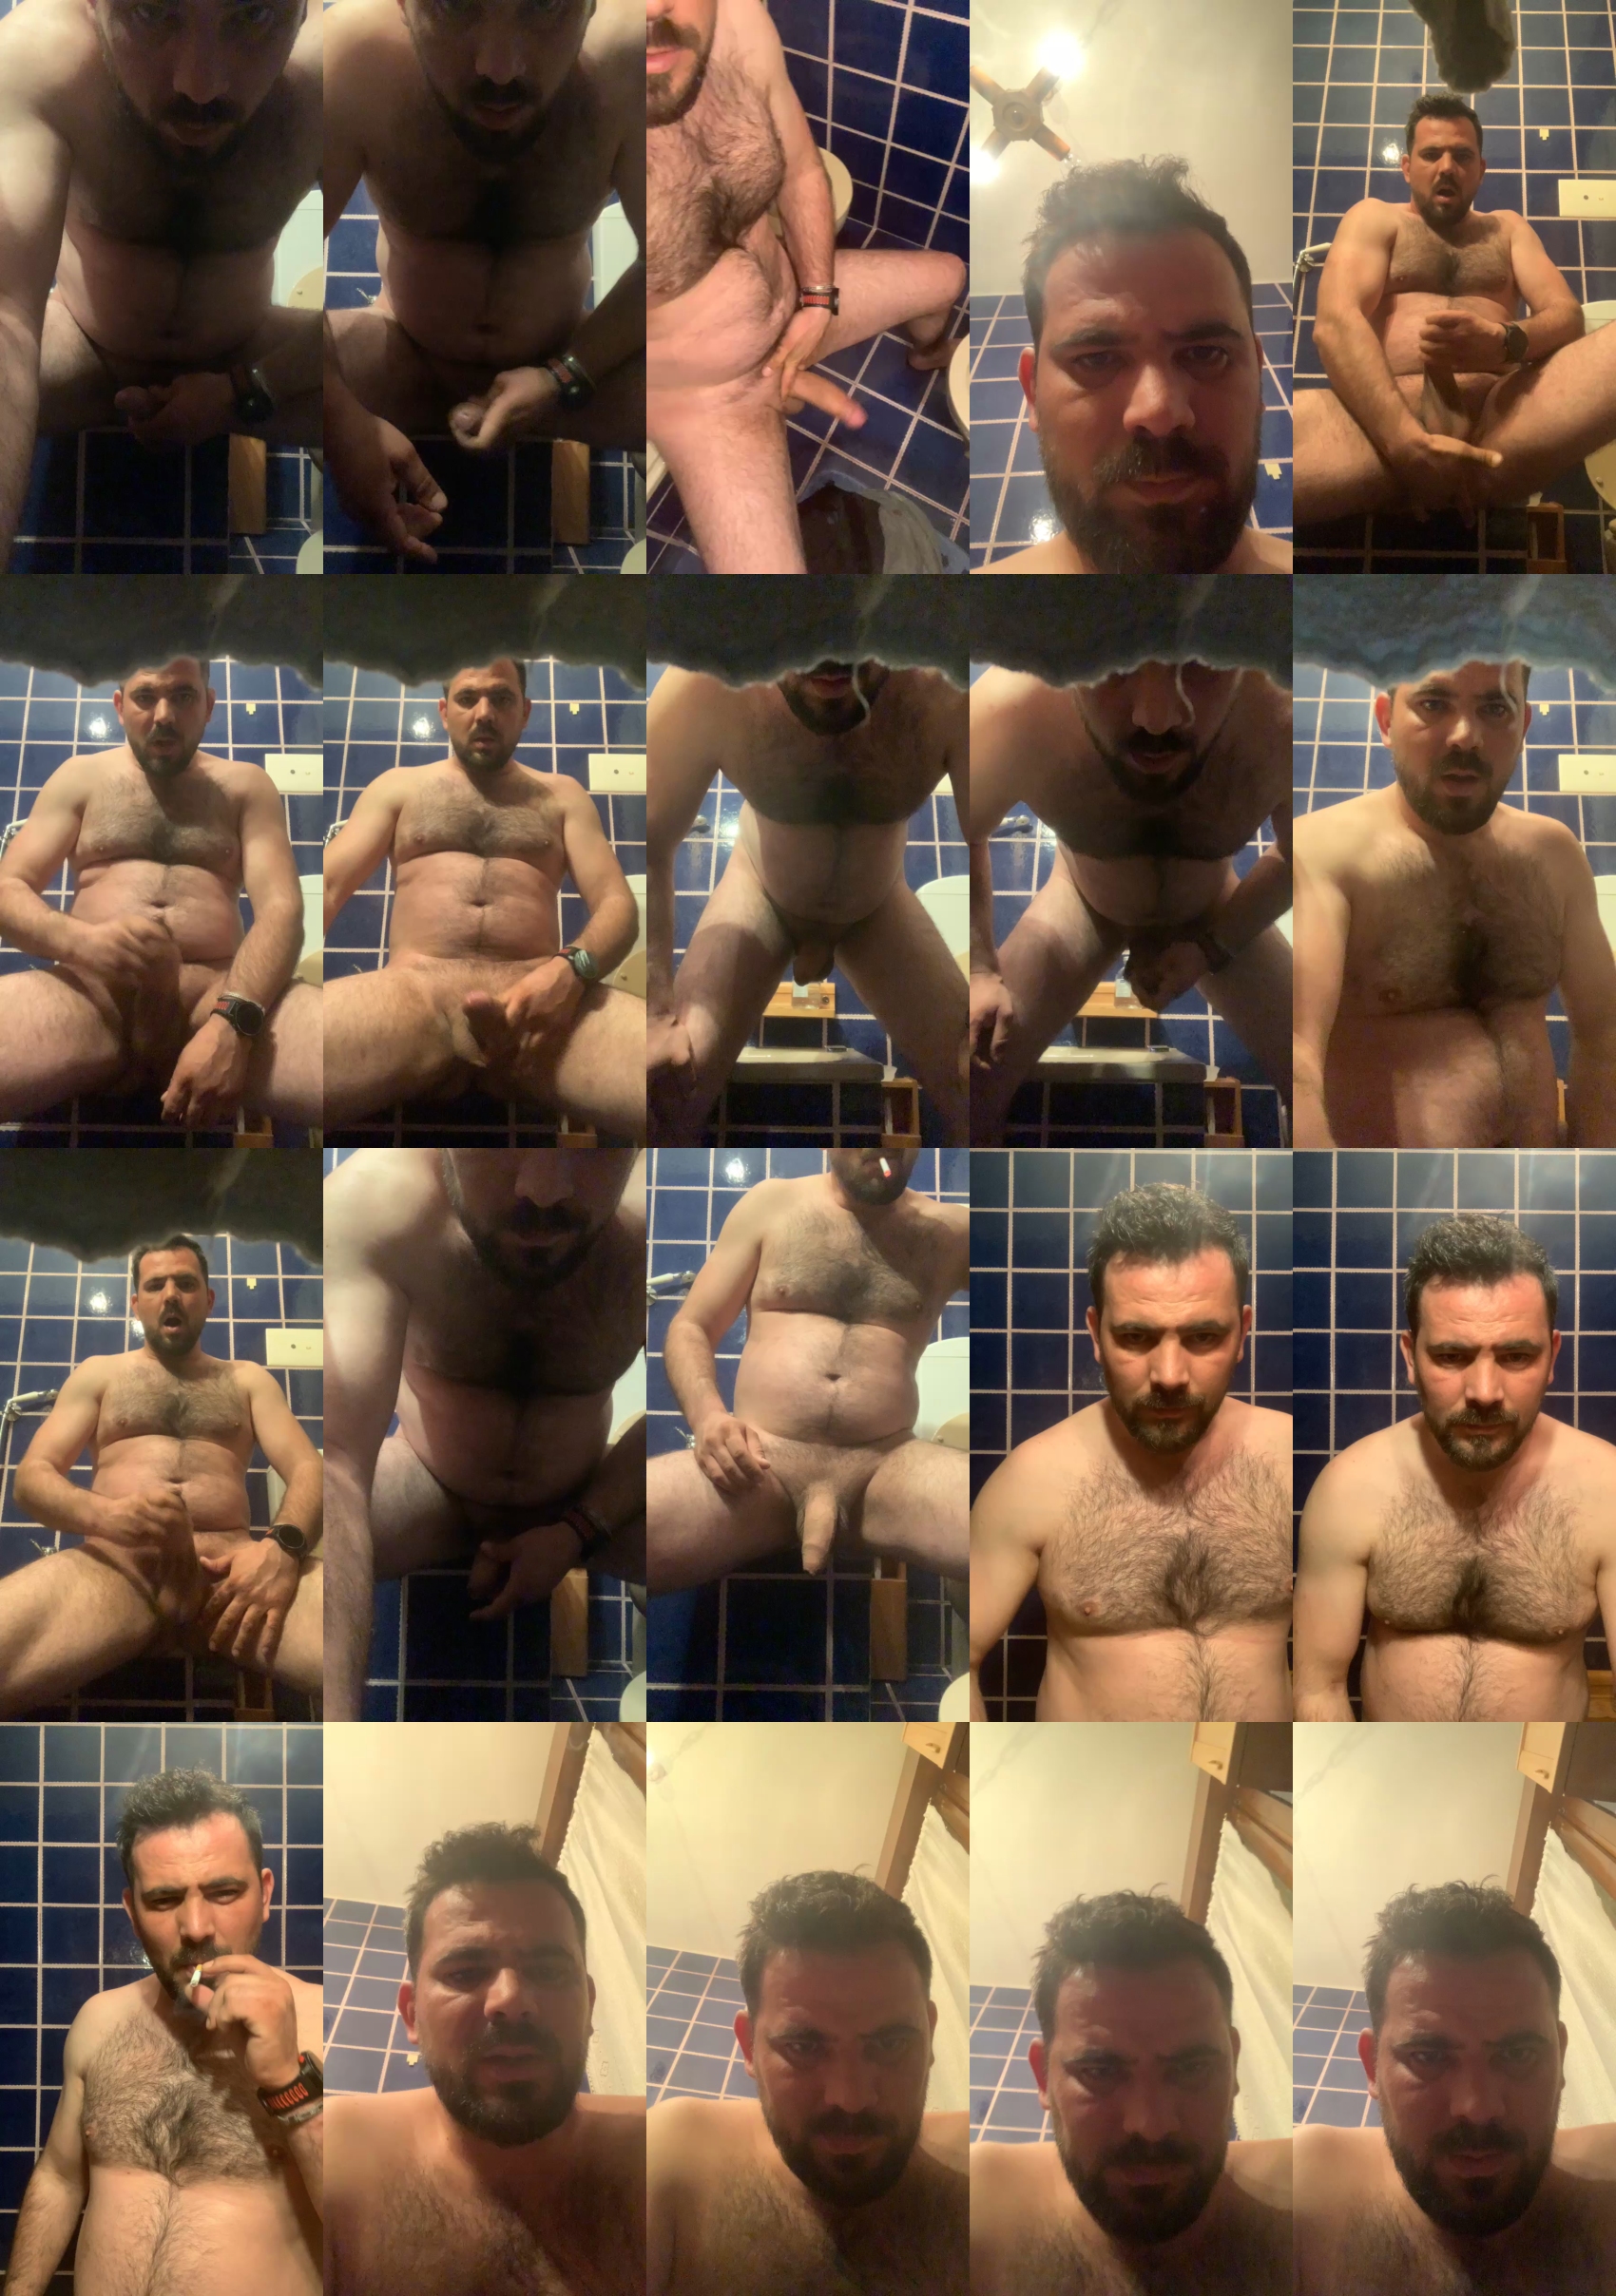 Edward_venezia  02-04-2022 Males Naked